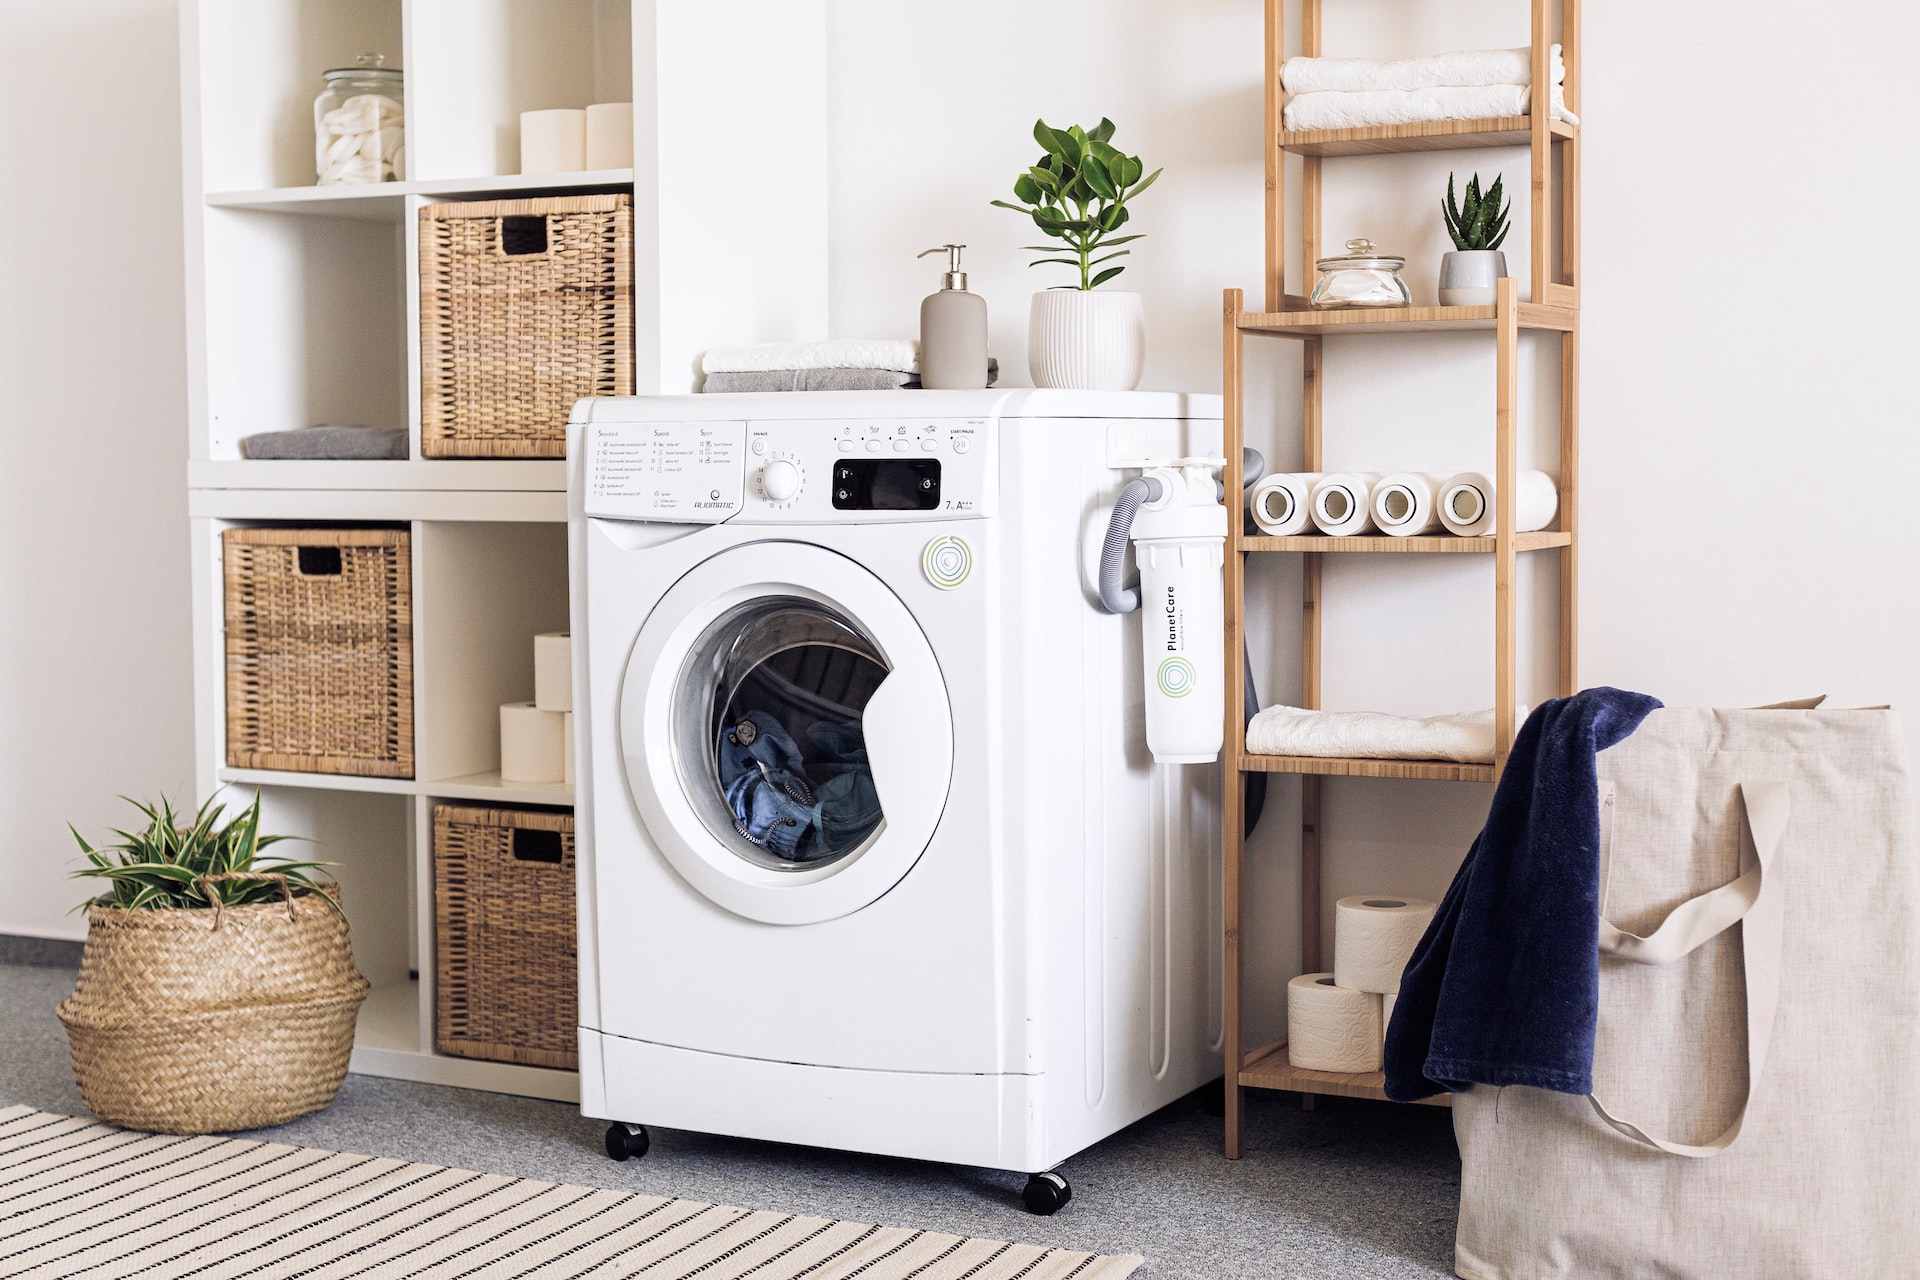 Kā pareizi mazgāt veļu veļas mašīnā?